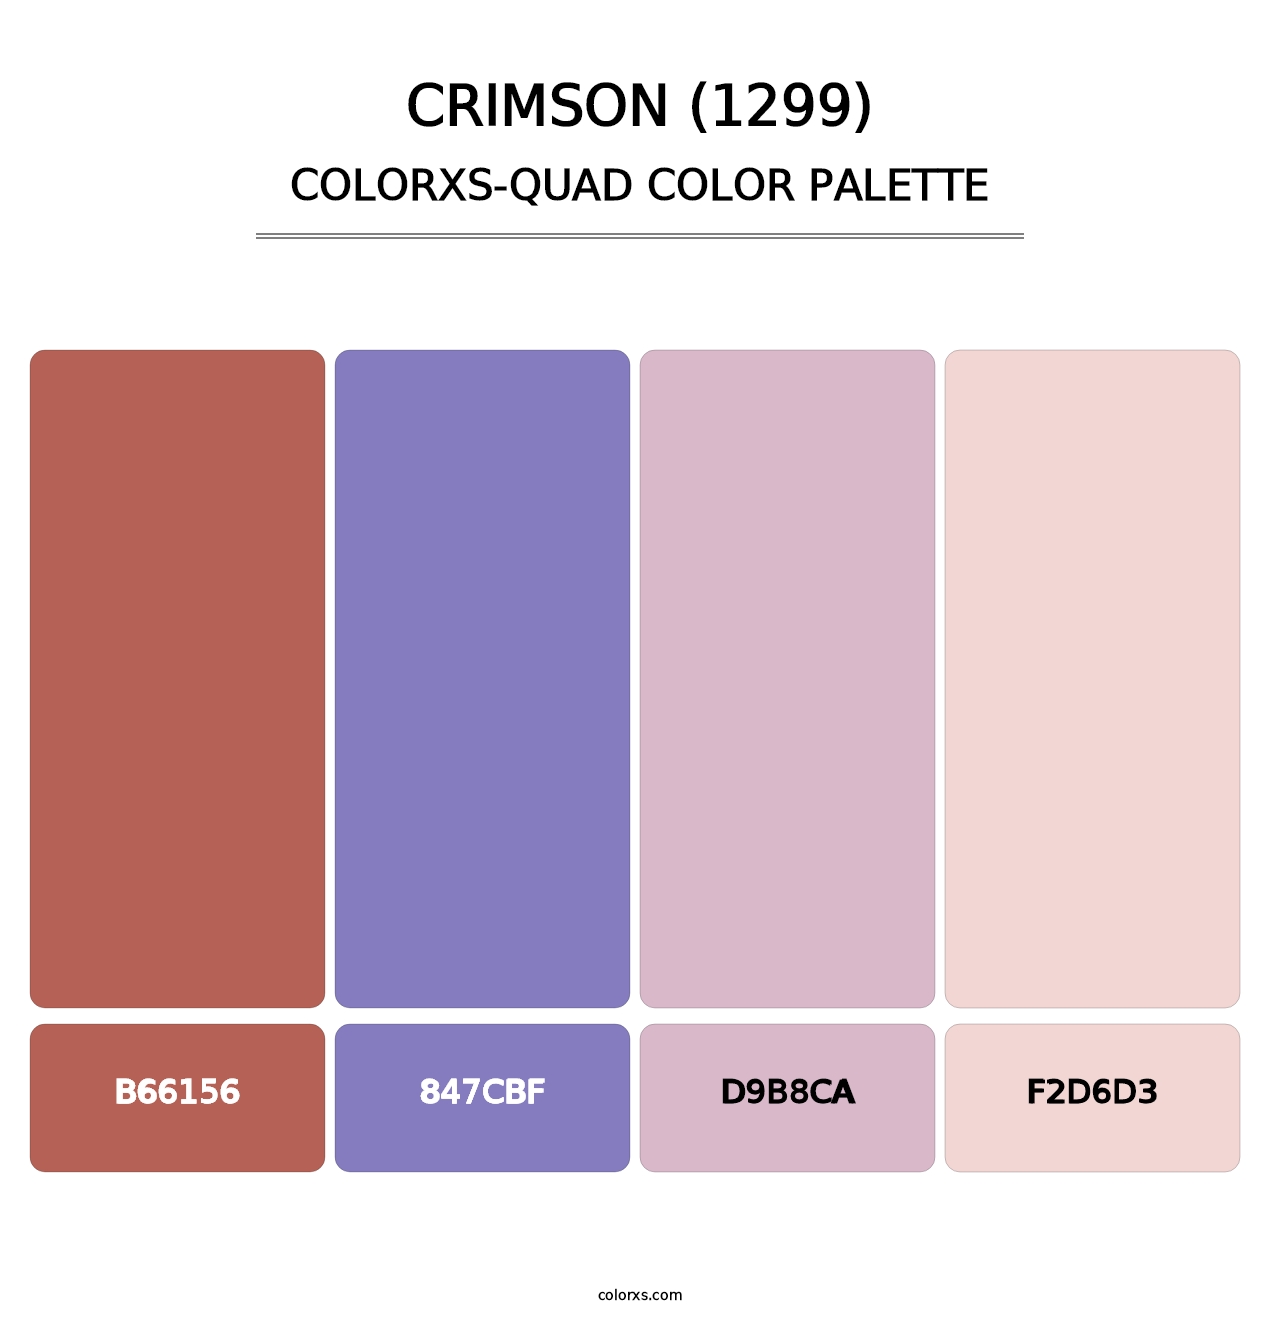 Crimson (1299) - Colorxs Quad Palette